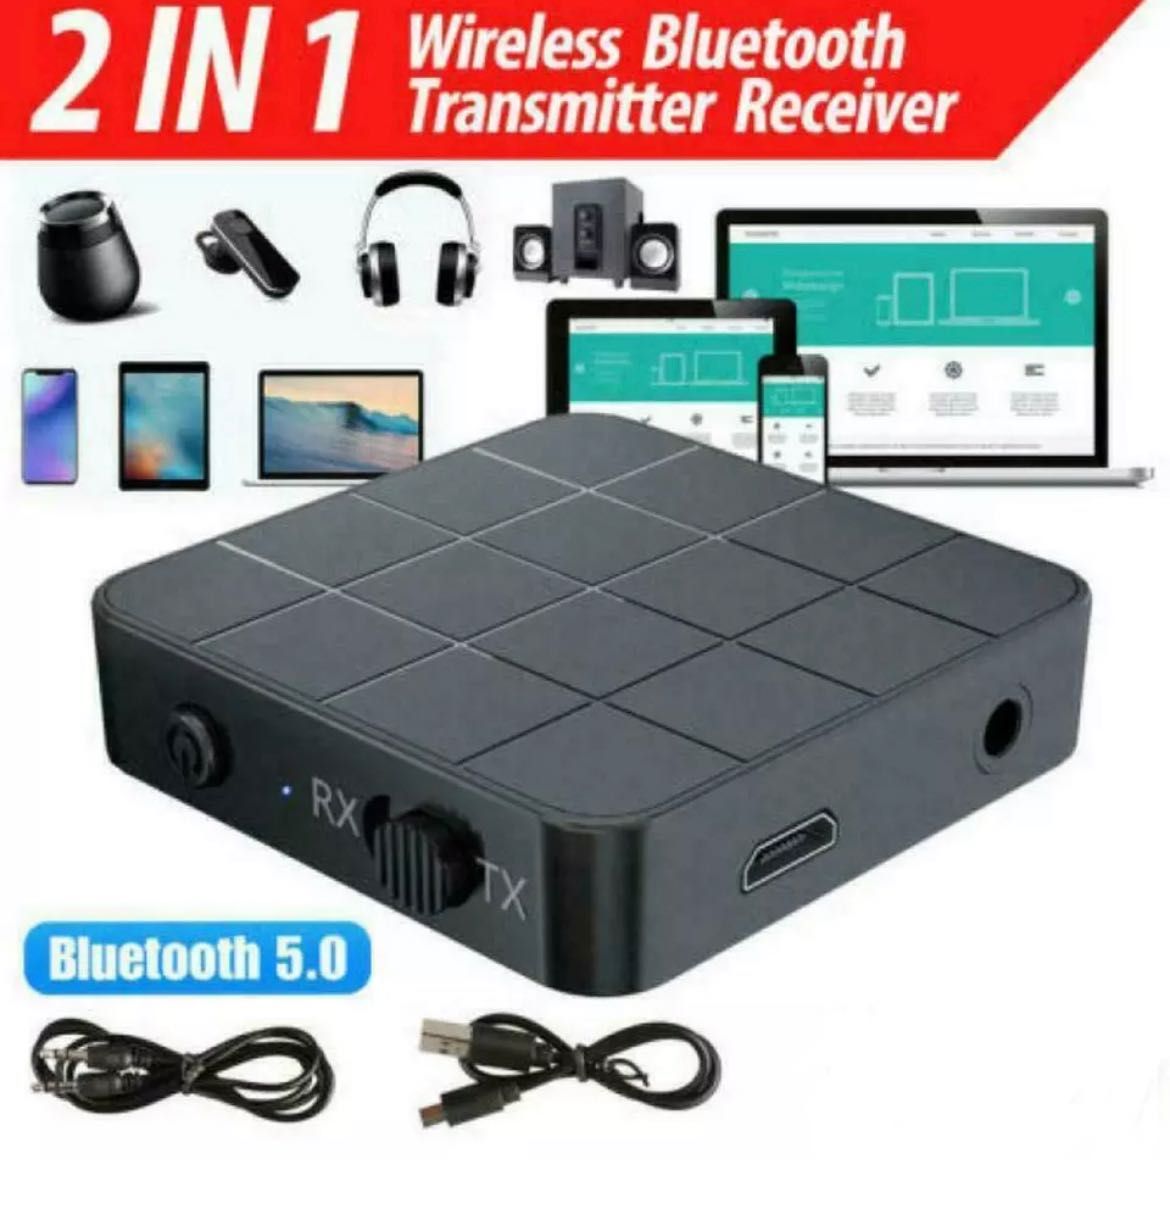 Oferta Bluetooth 5.0 Receiver si Transmitter 2in1 AUX HI-FI Nou